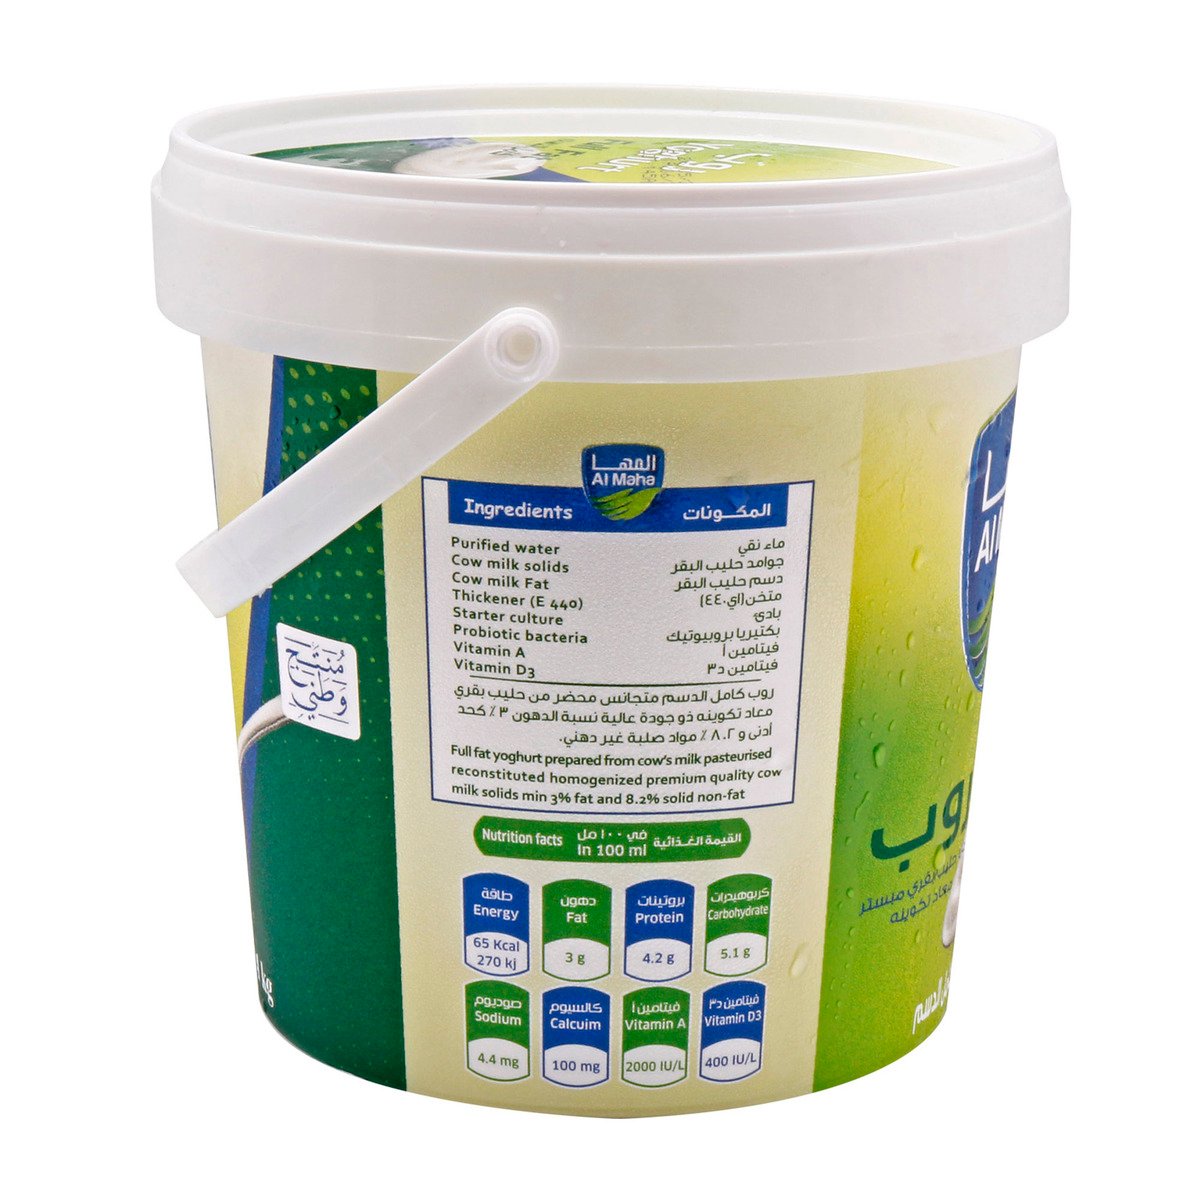 Al Maha Fresh Yoghurt Full Fat 1kg